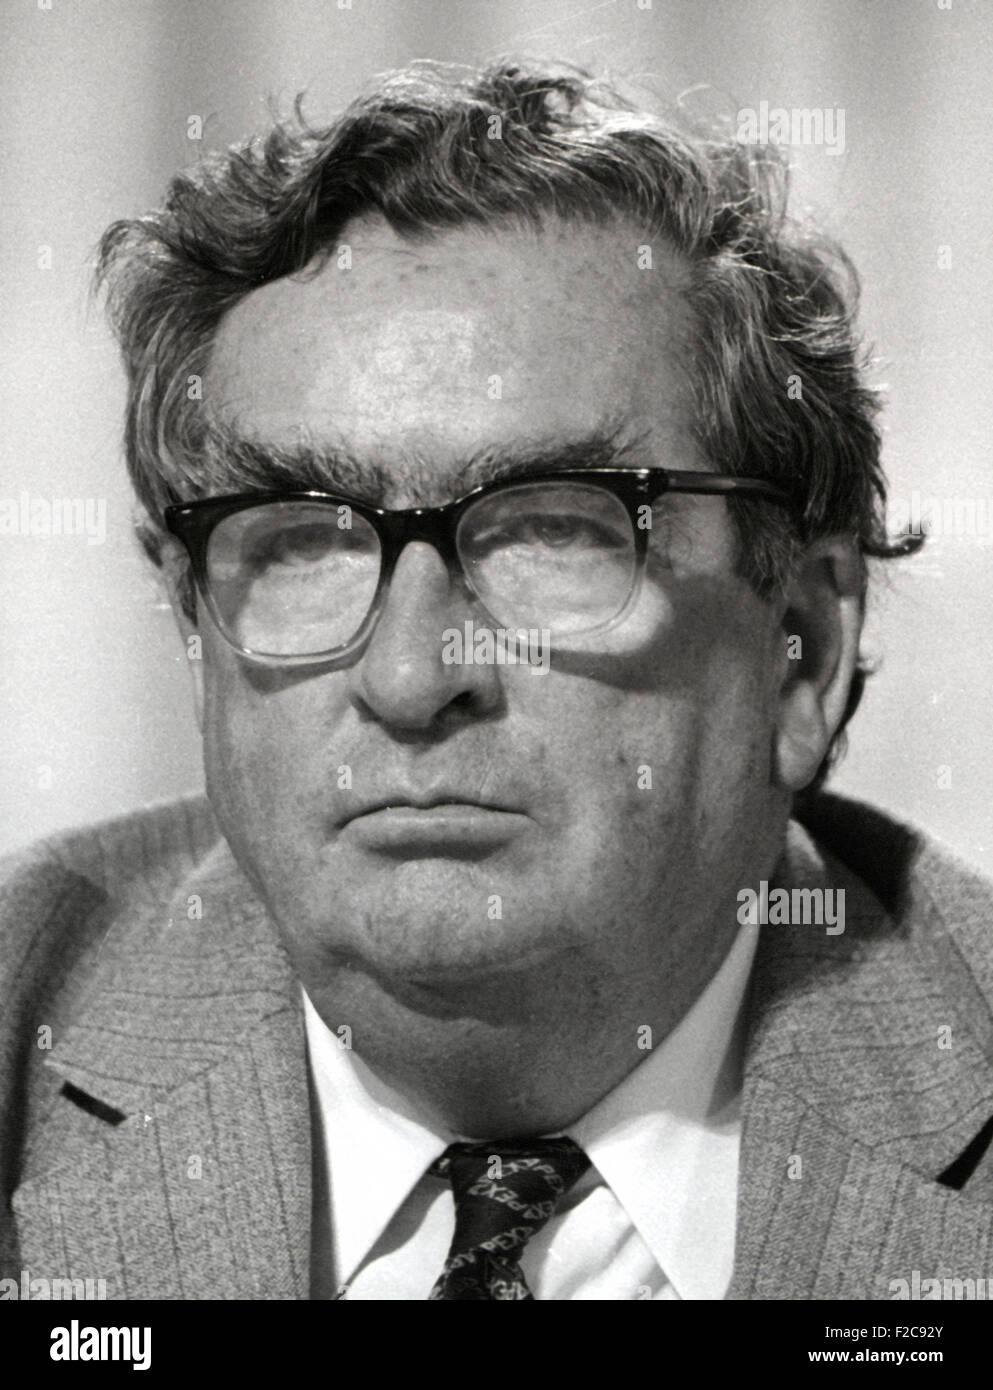 Denis Winston Healey Lord Healey britische Labour-Politiker 1984-Bild Stockfoto